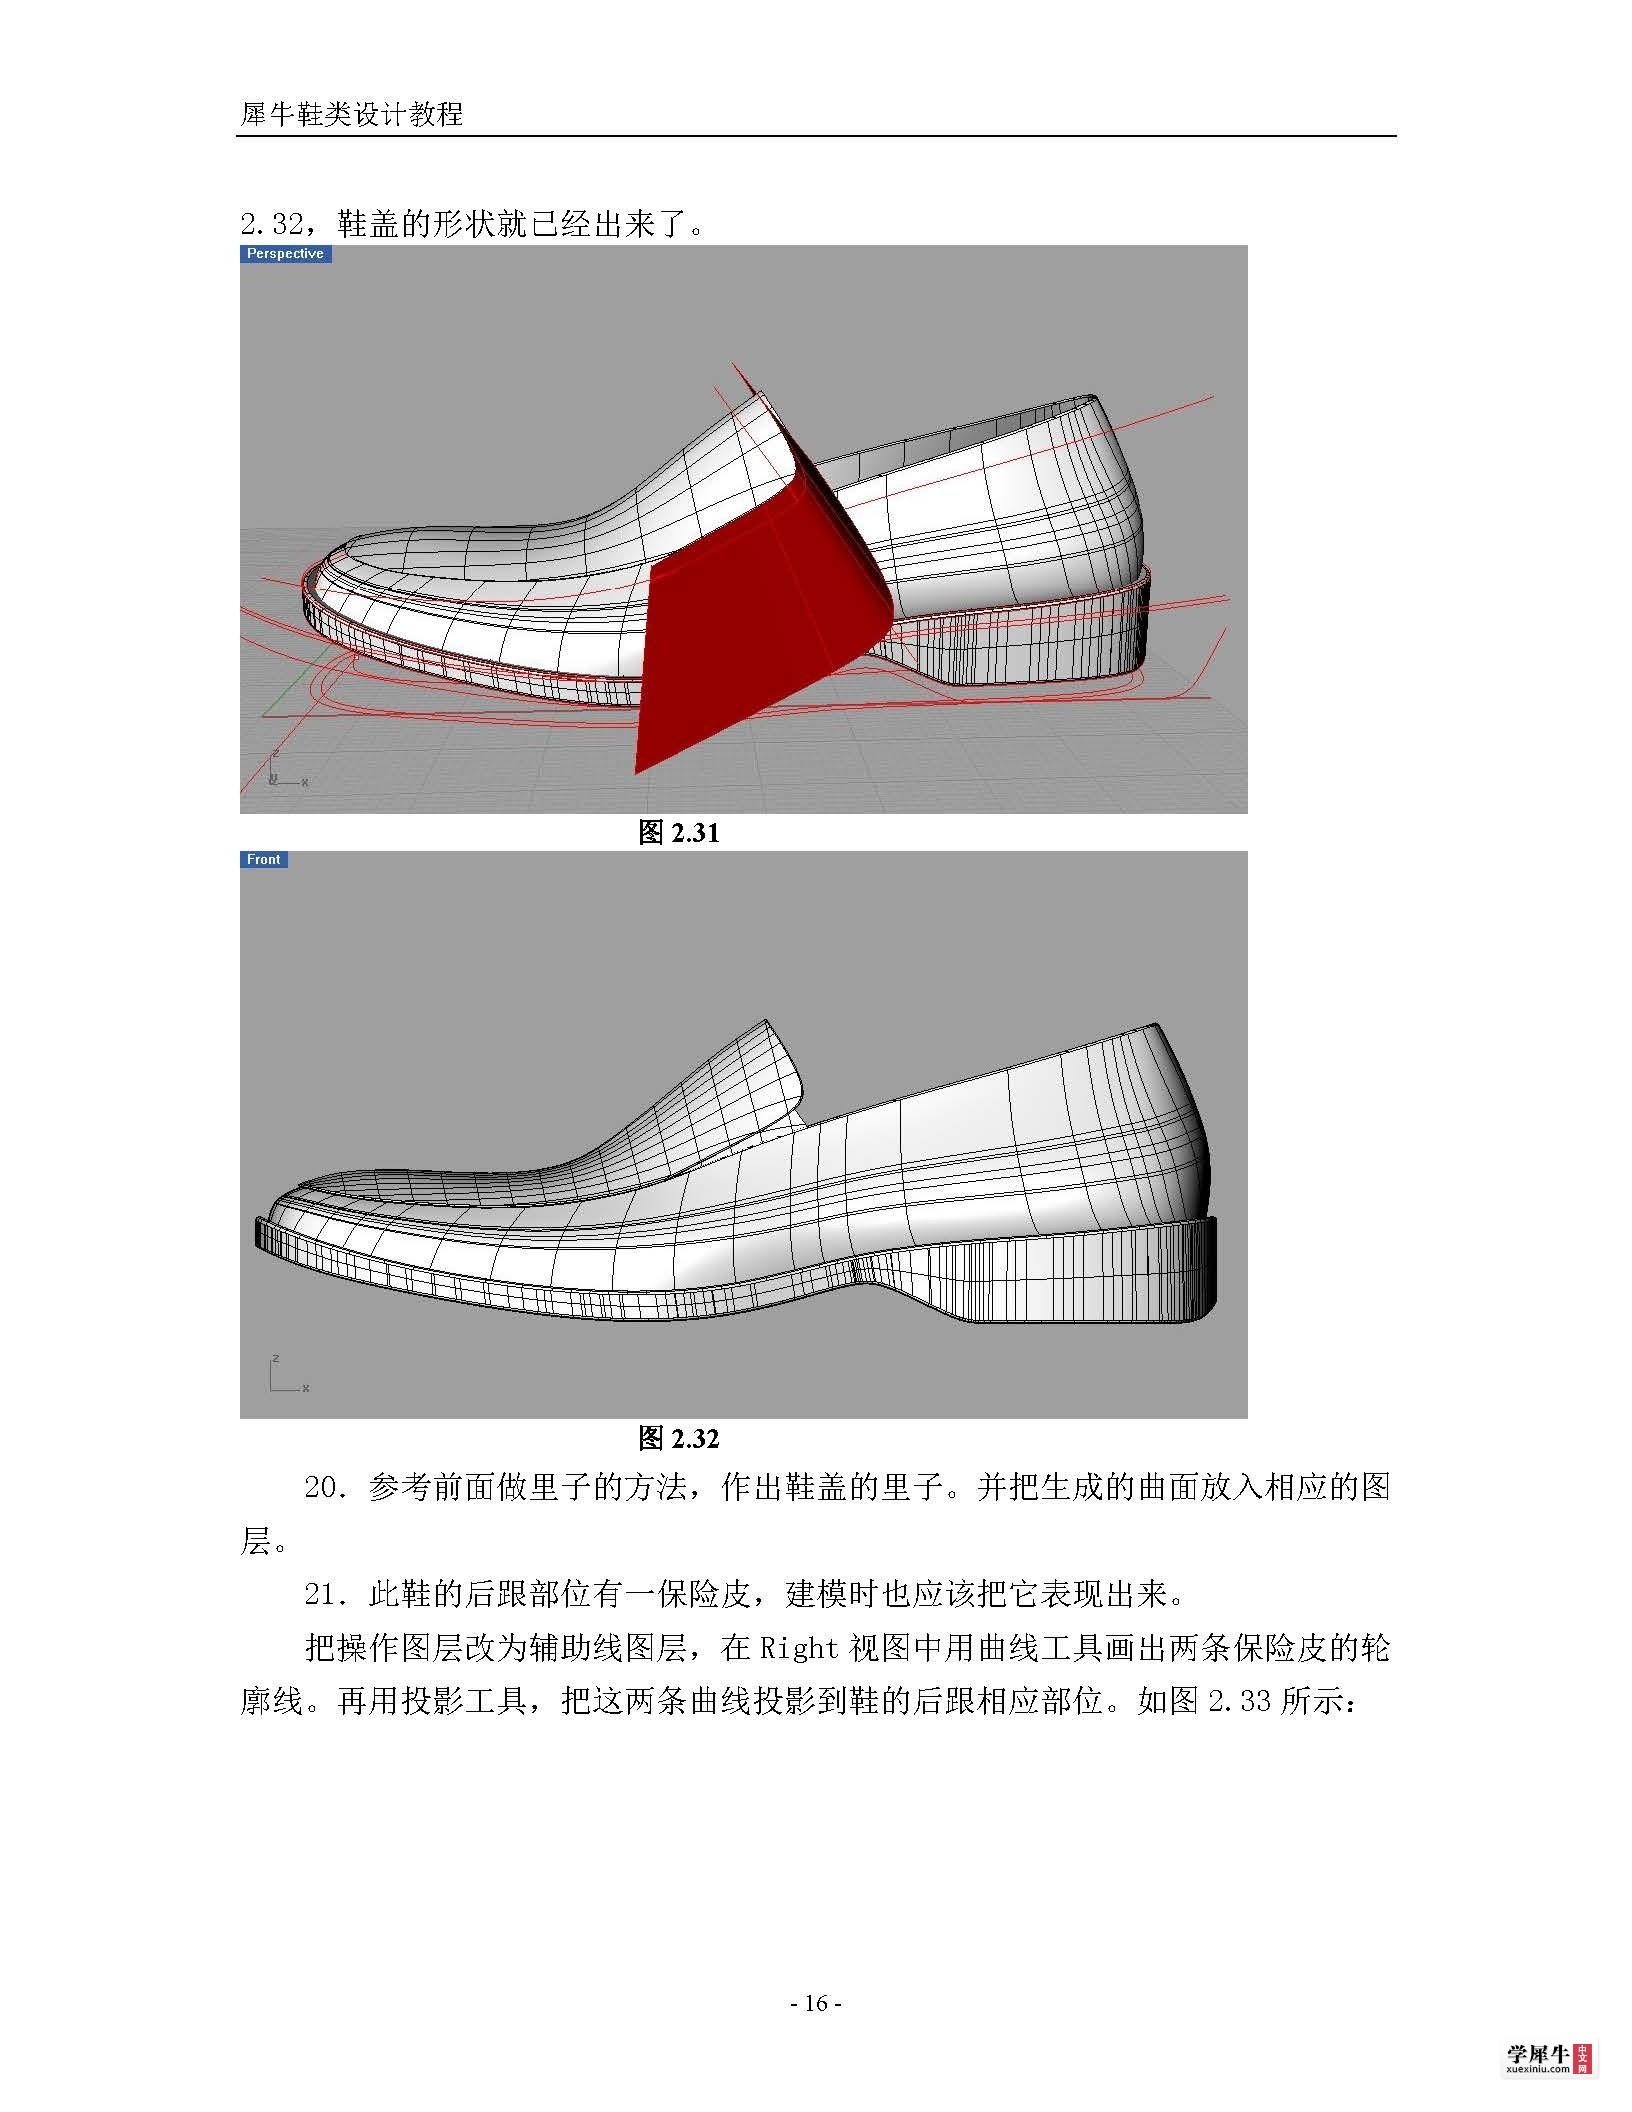 犀牛鞋类建模终极教程(转)_页面_16.jpg